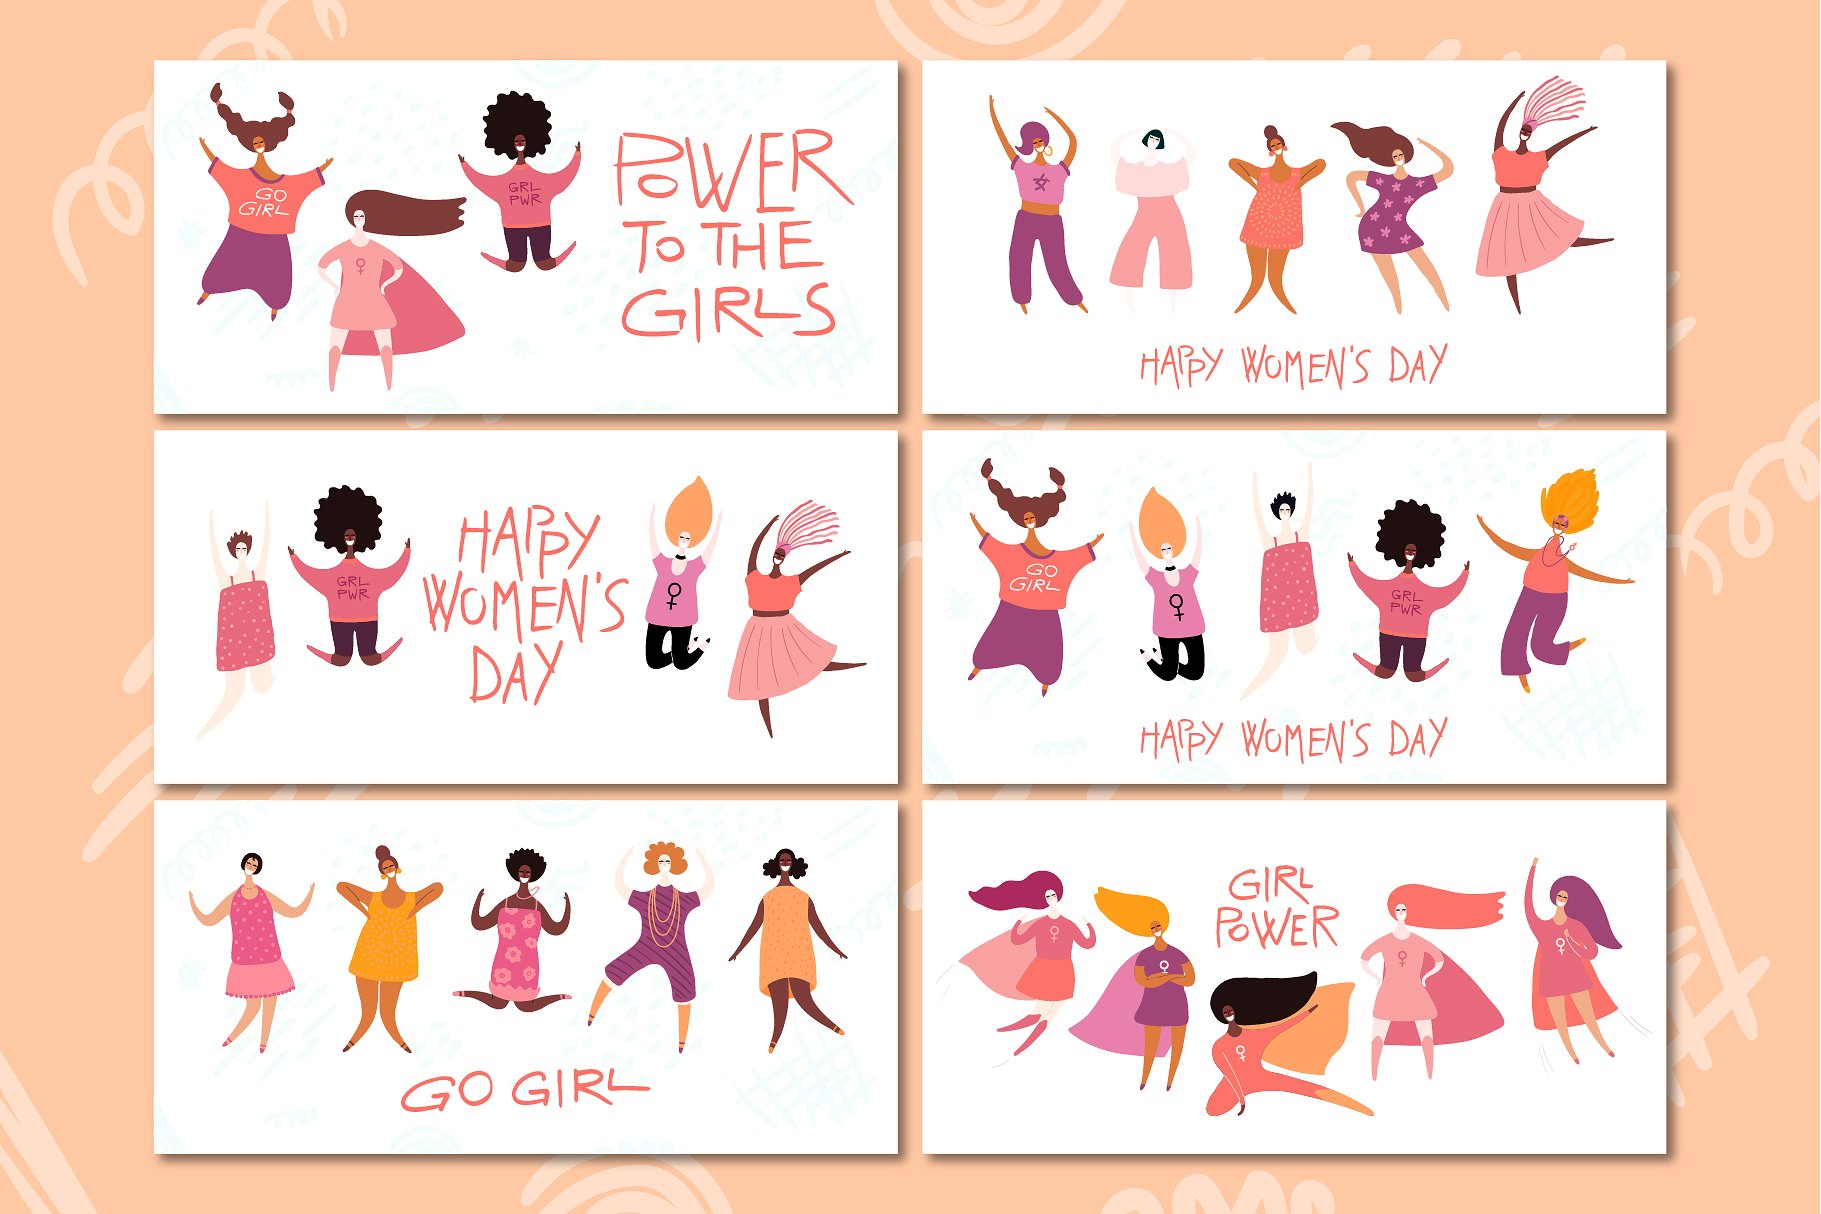 不同国家不同肤色的女孩插画素材合集包 Girl Power